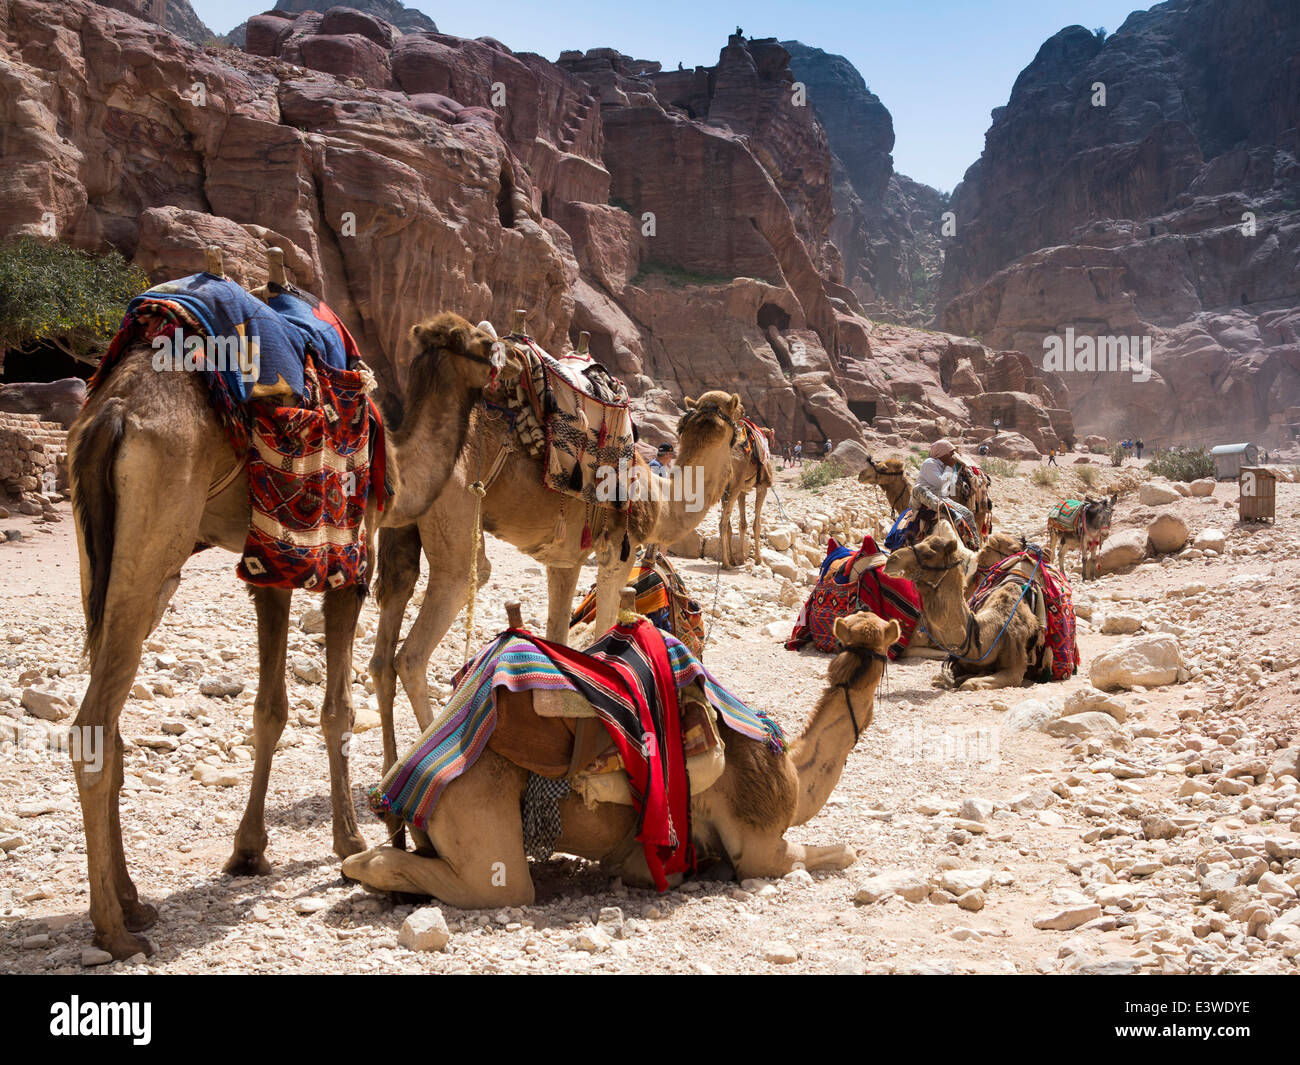 Jordan, Arabah, Petra, camels waiting to give tourists ride Stock Photo